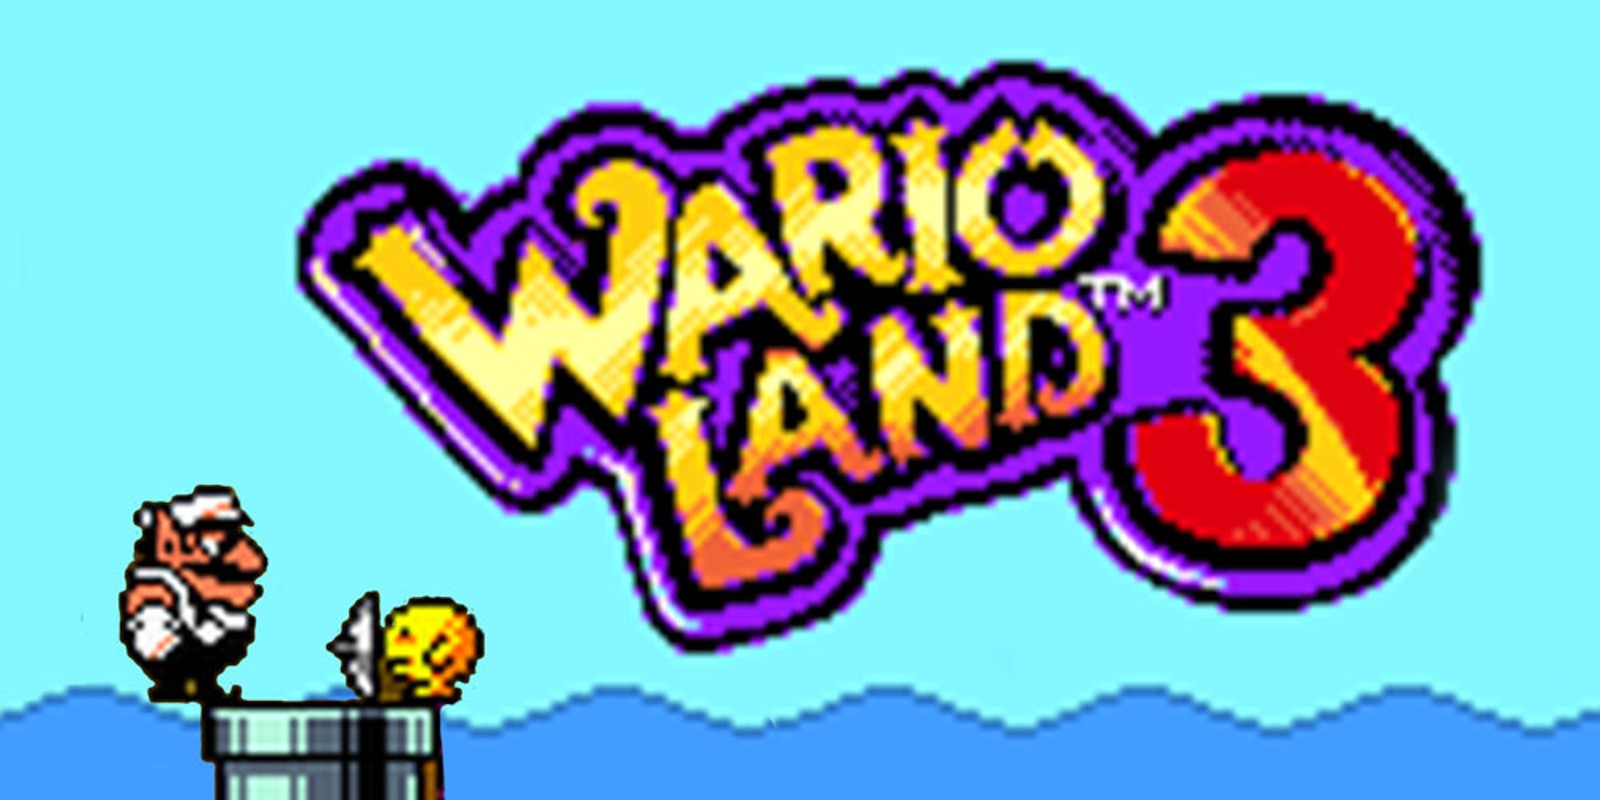 Wario Land™ 3